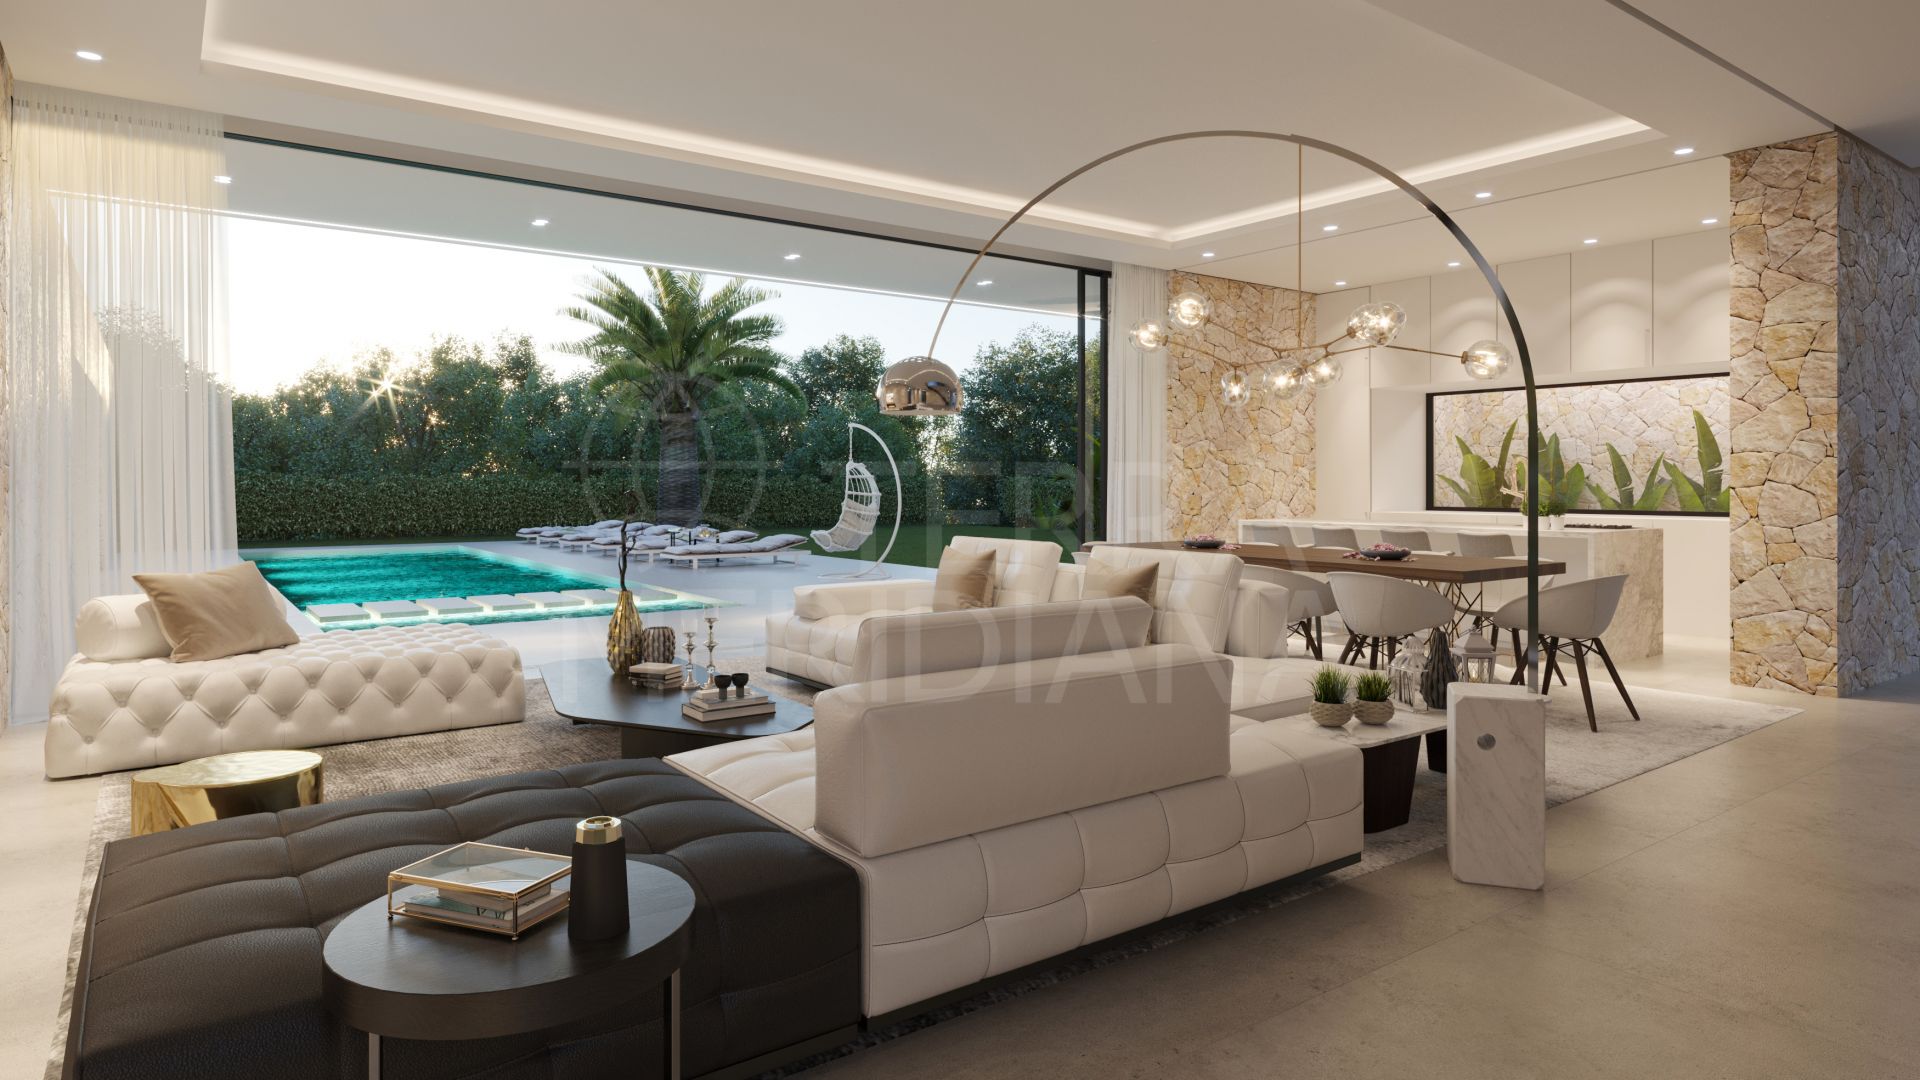 Villa contemporánea de nueva construcción, con 5 dormitorios, piscina y jardín, cerca de la playa, en venta en Marbella